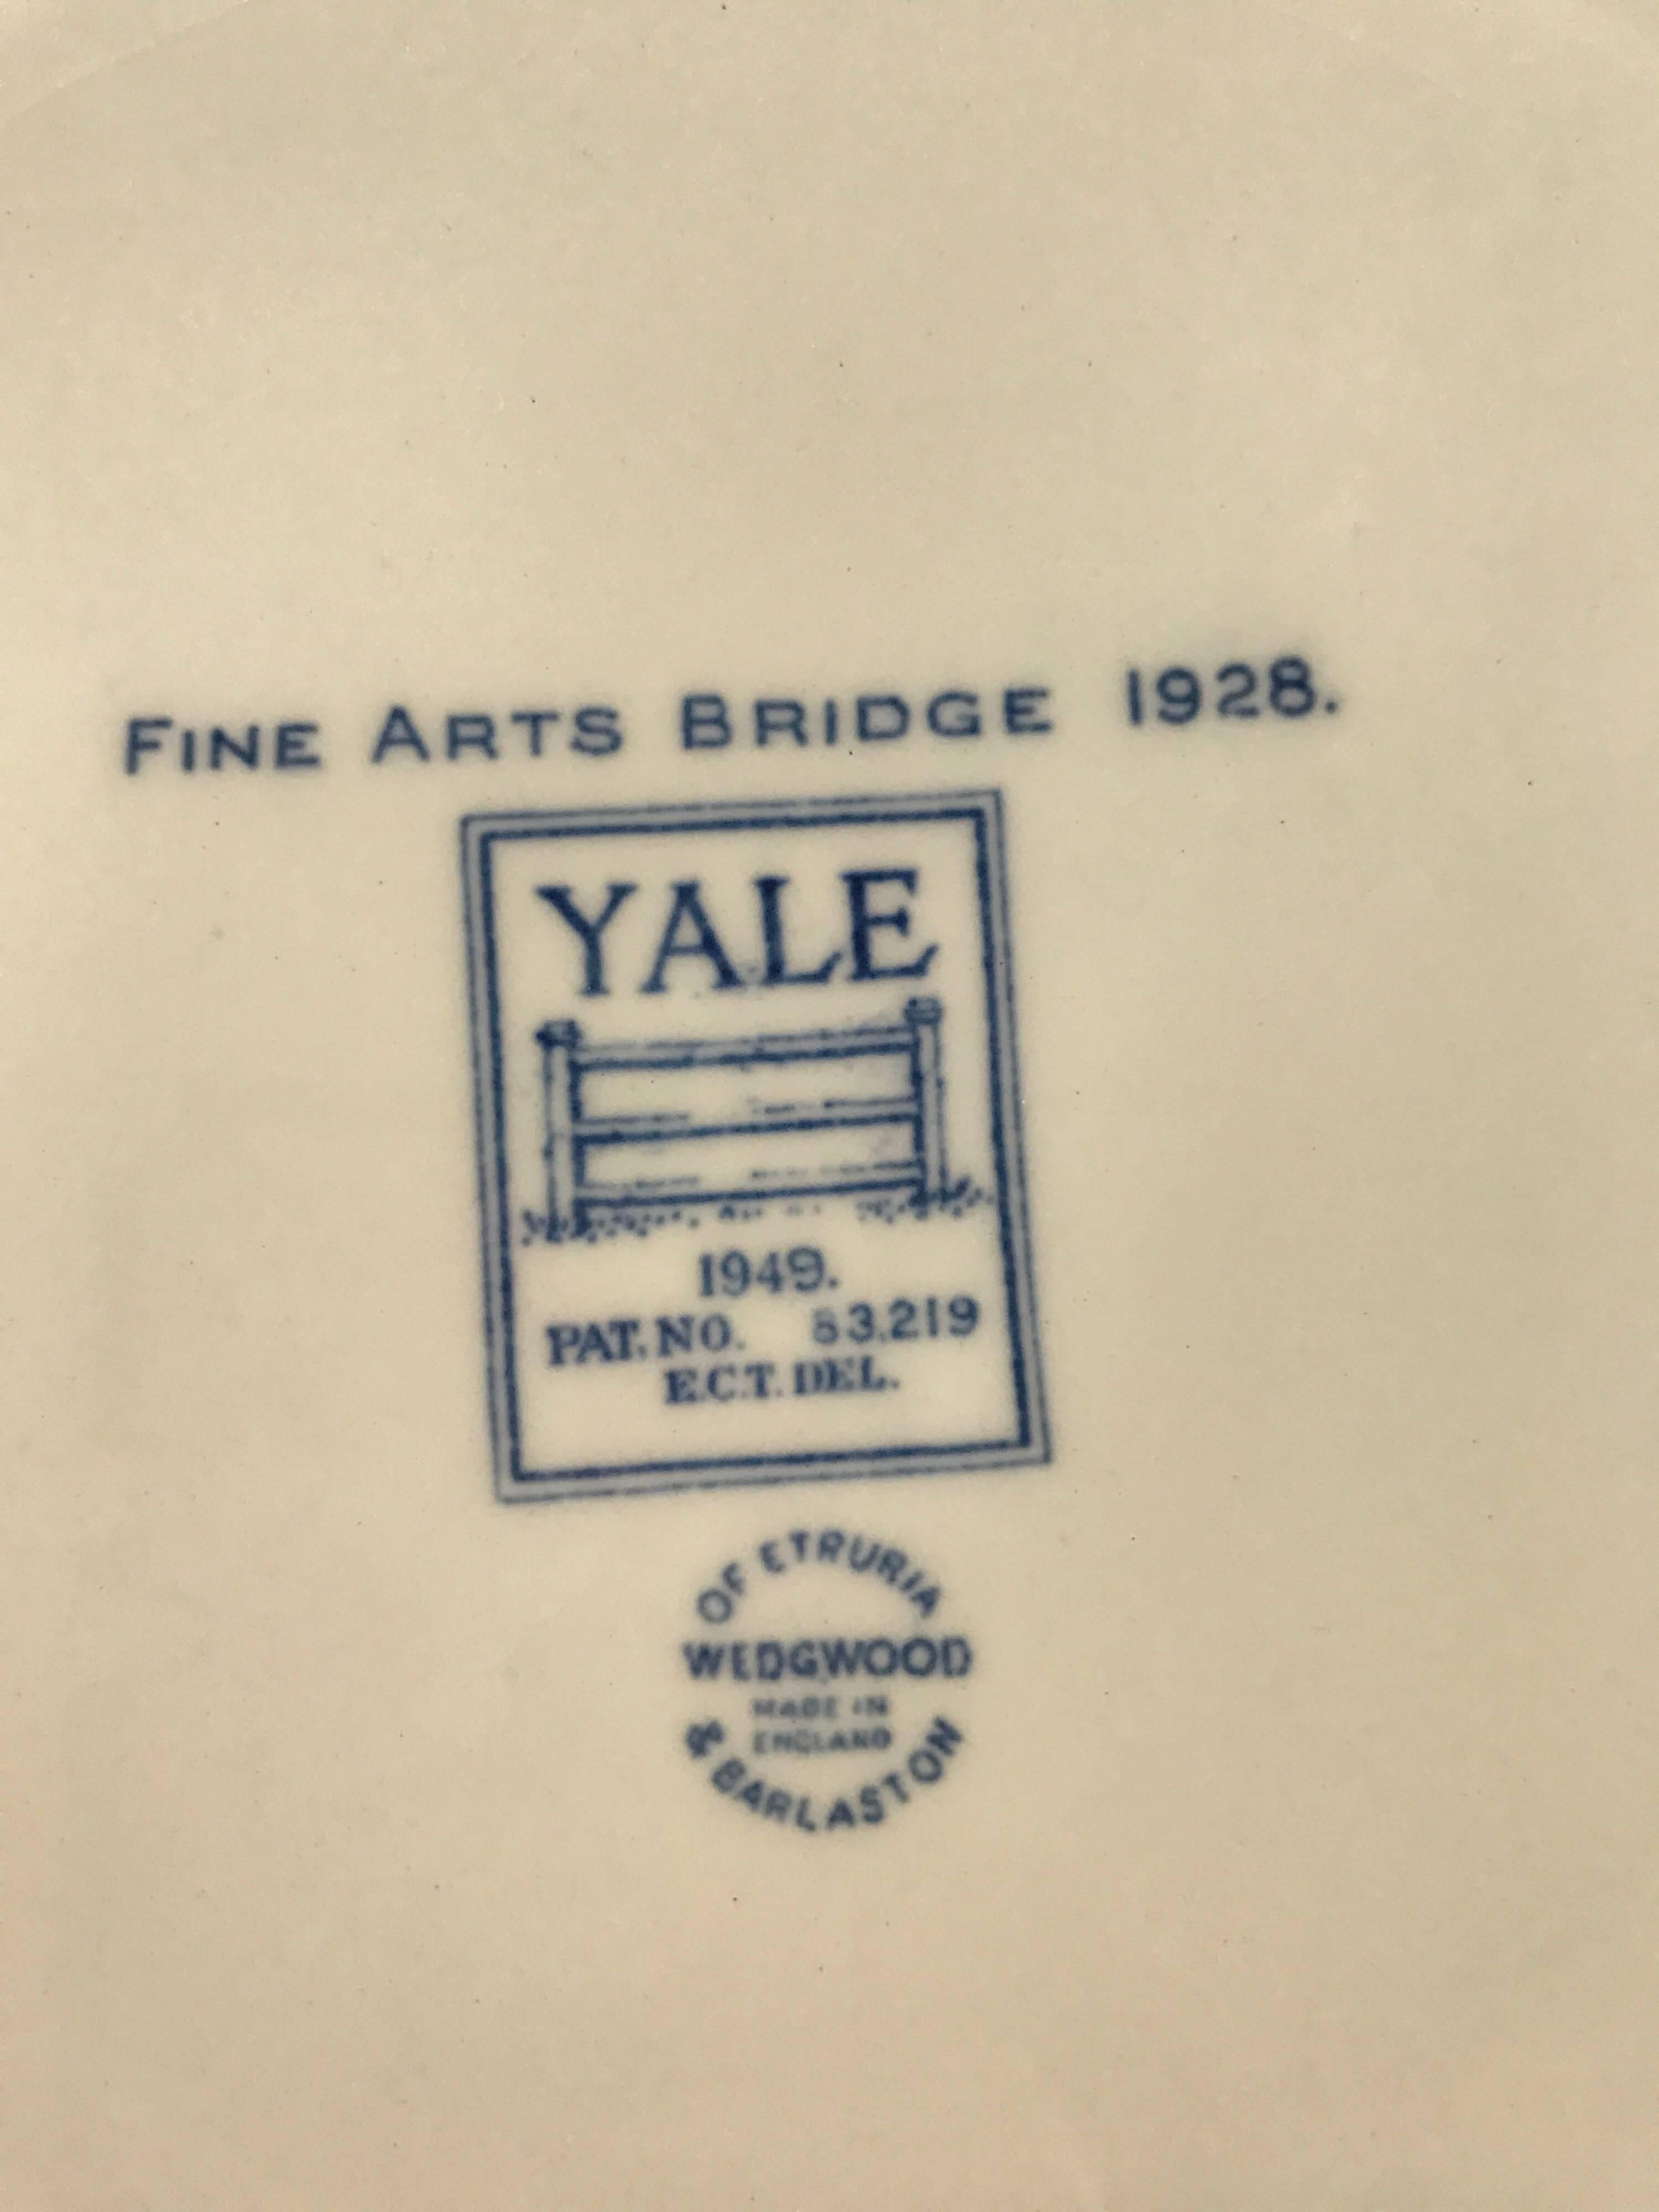 Set of Five Wedgwood Blue and White Yale University Plates 1